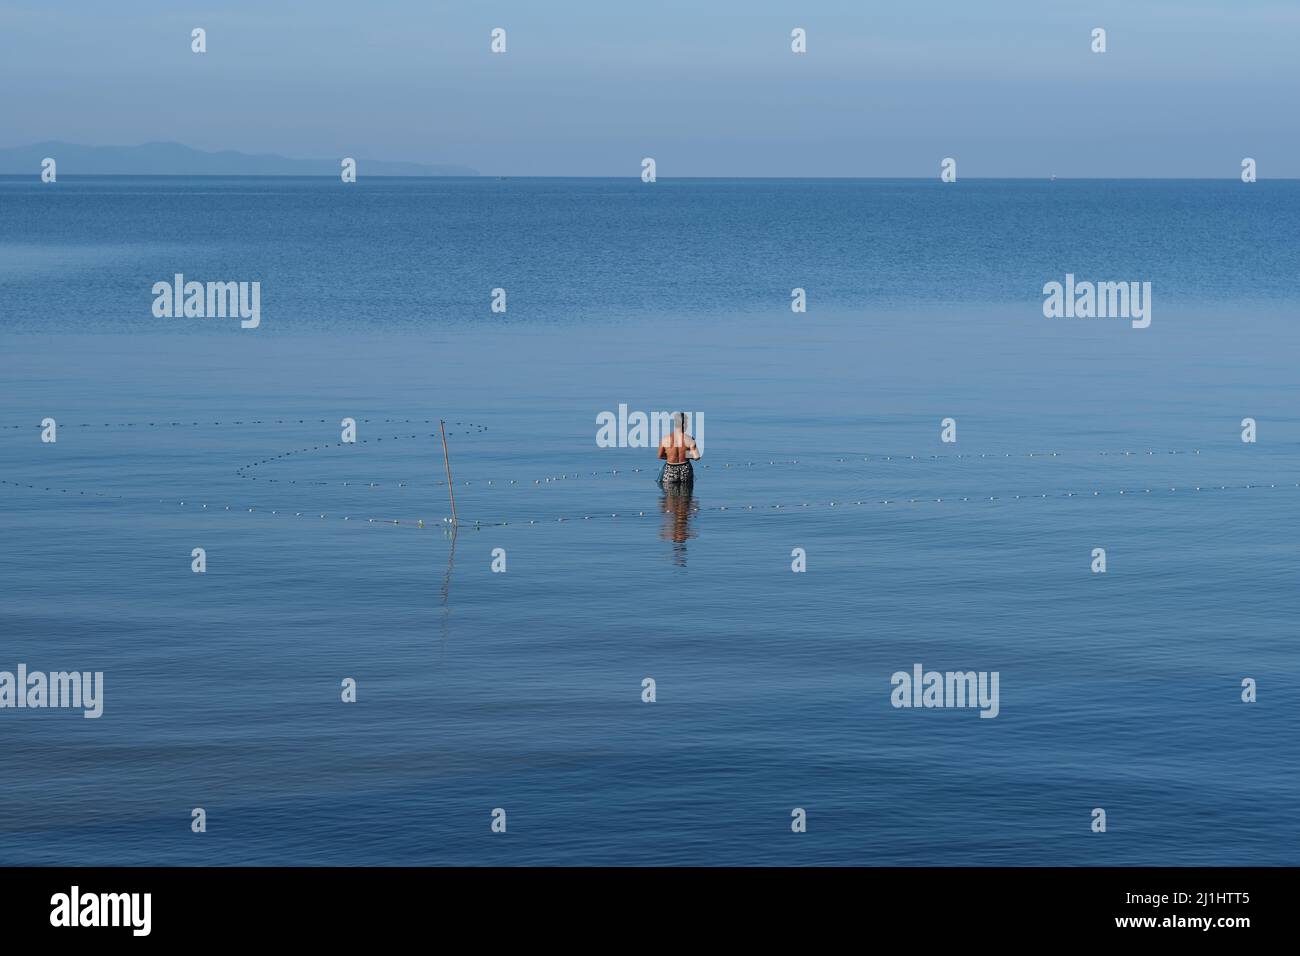 Un pêcheur solitaire avec filet de pêche se dresse au milieu d'une mer et d'un ciel bleu sans limites Banque D'Images